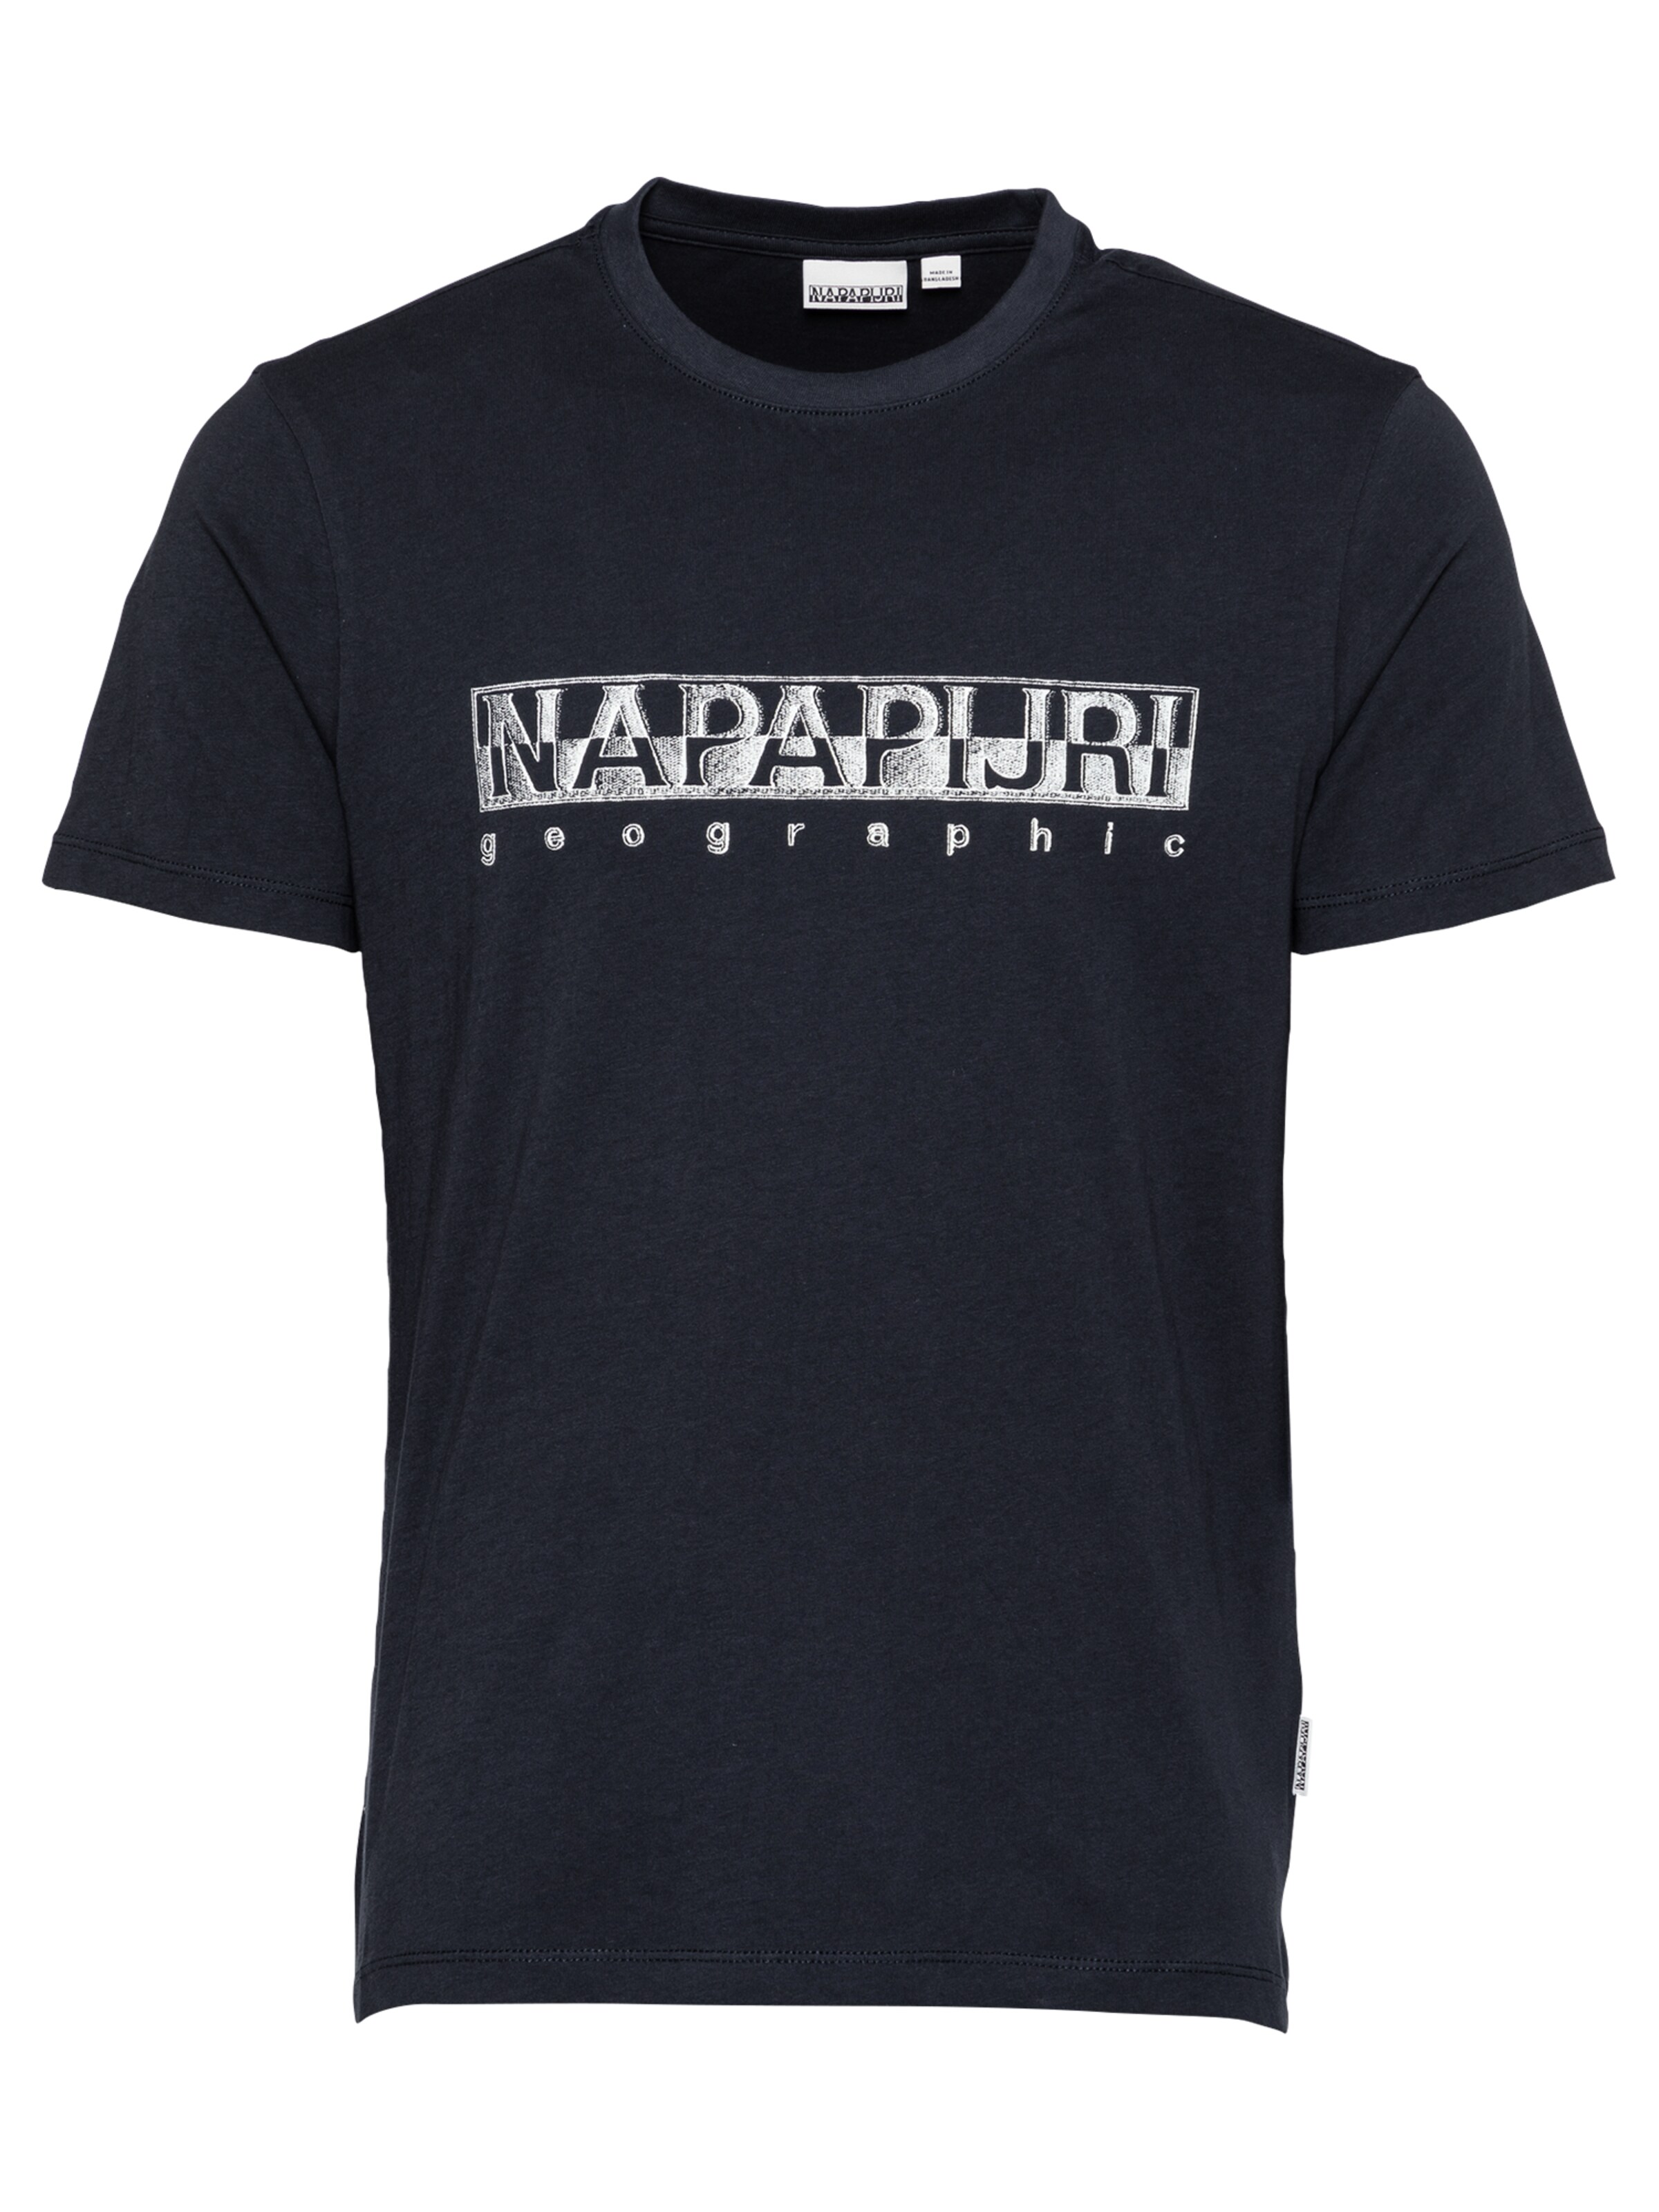 M Baumwolle blau #23edce3 Napapijri Napapijri T-Shirt Herren Oberteil Shirt Gr 